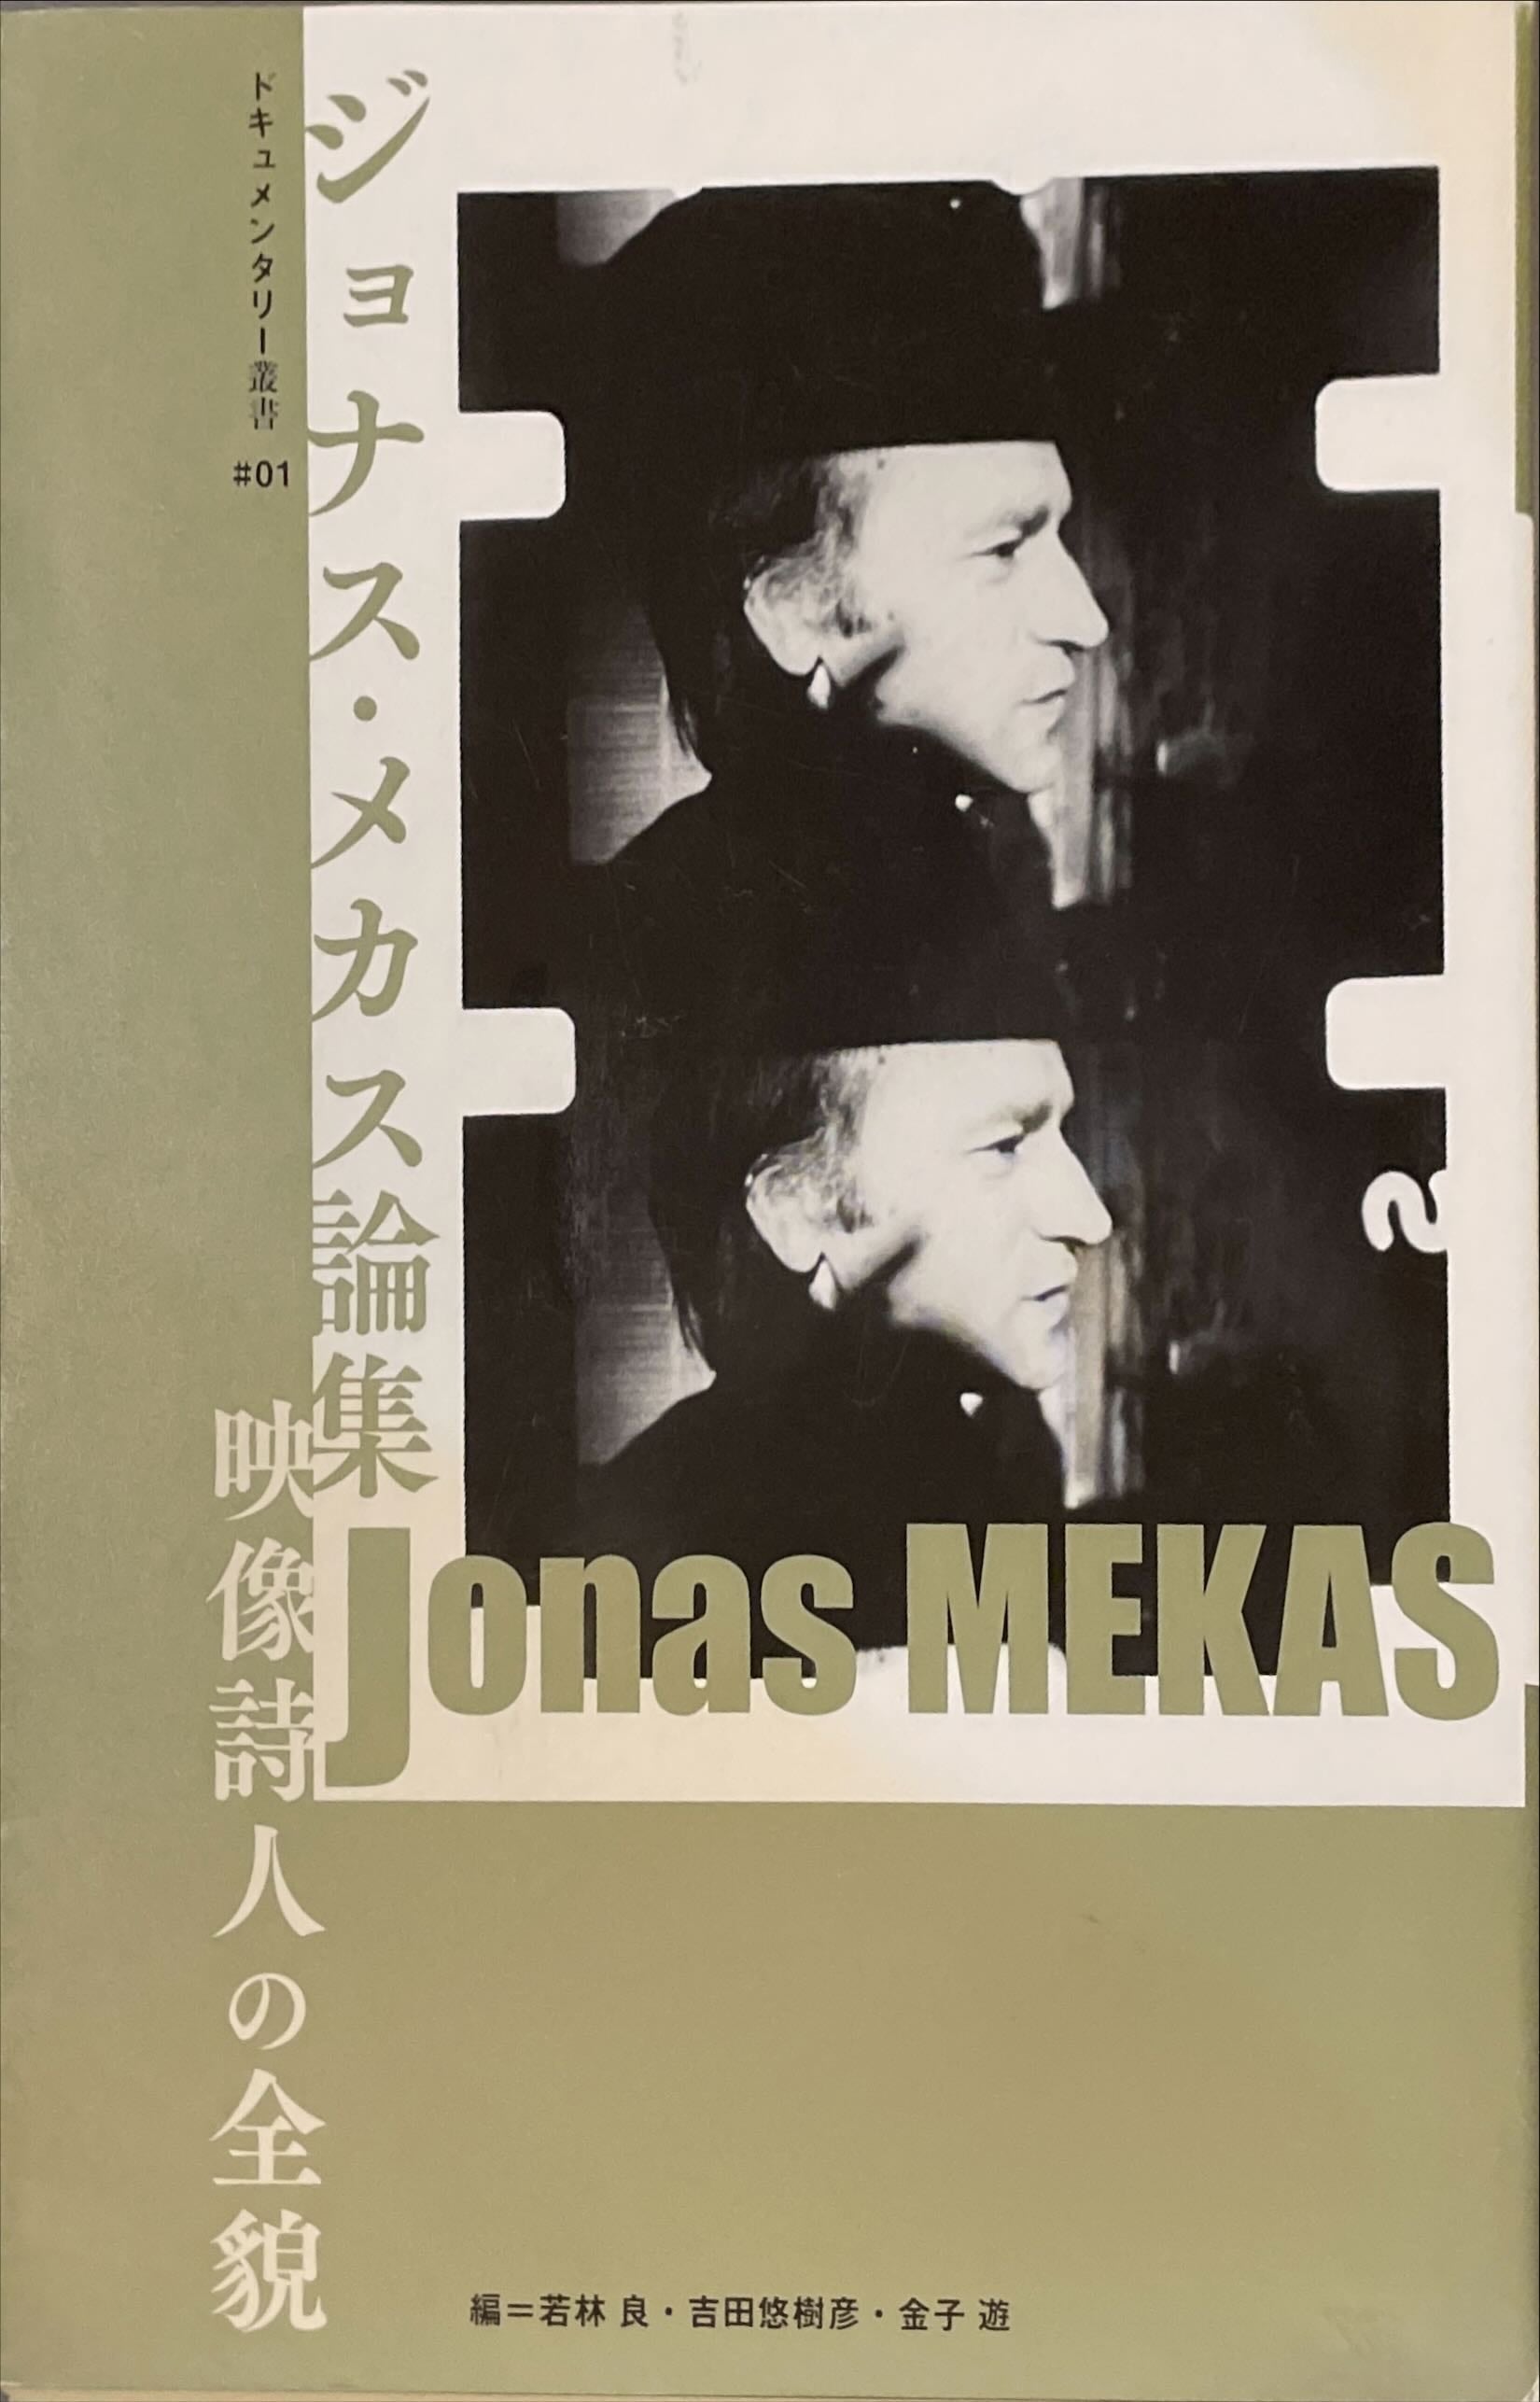 ジョナス・メカス論集　映像詩人の全貌　ドキュメンタリー叢書♯01　古書みすみ